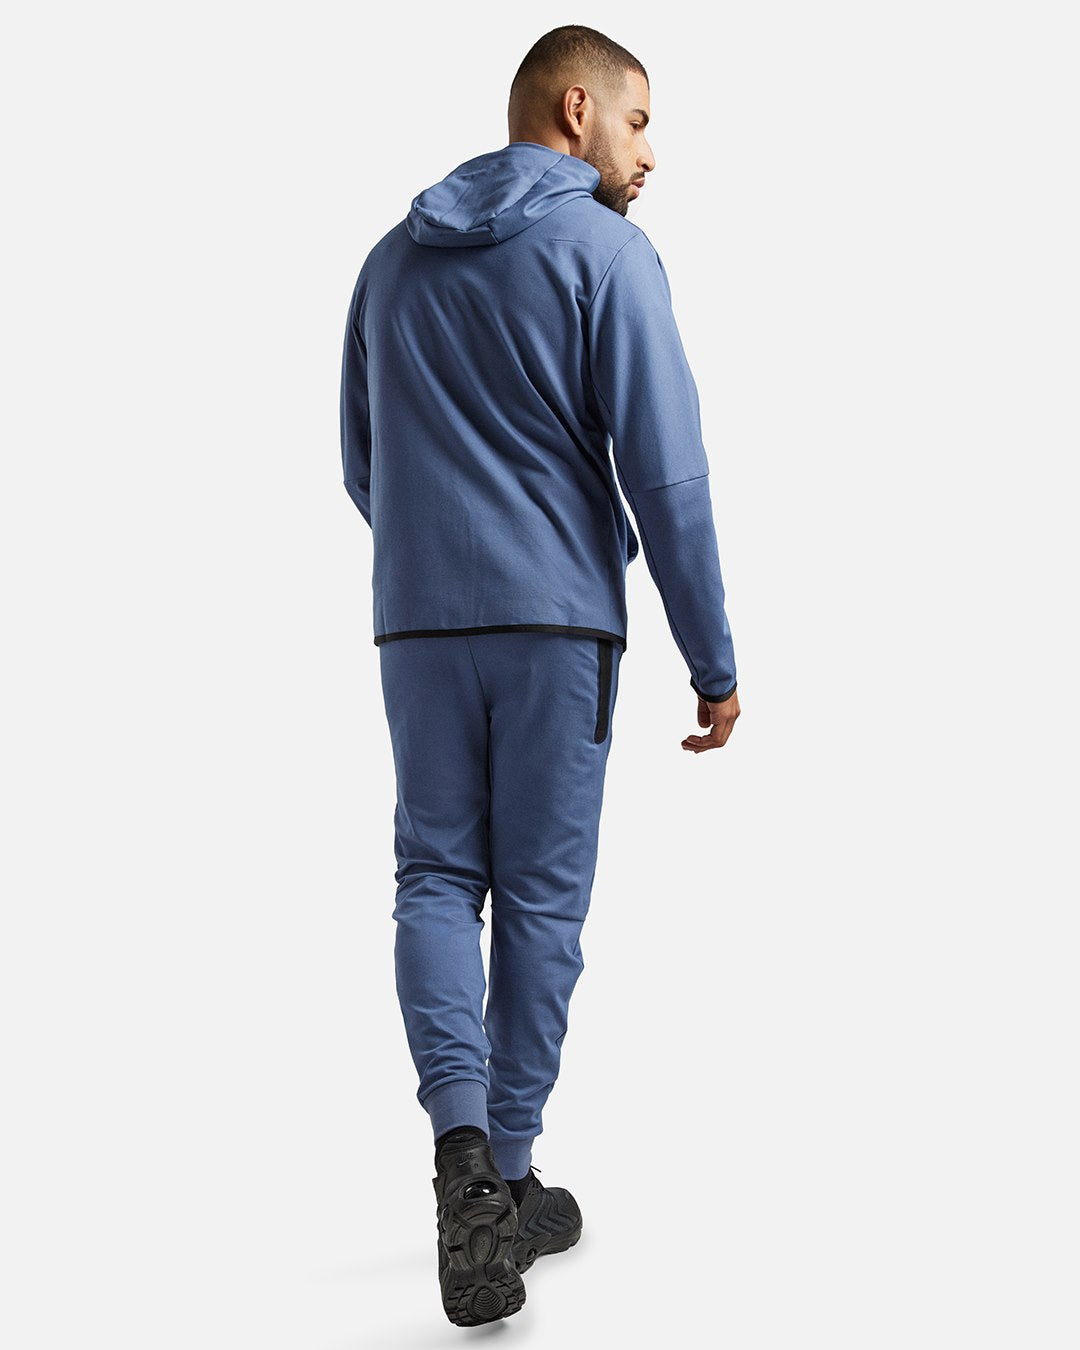 Survêtement Nike Tech Fleece Lightweight - Bleu/Noir